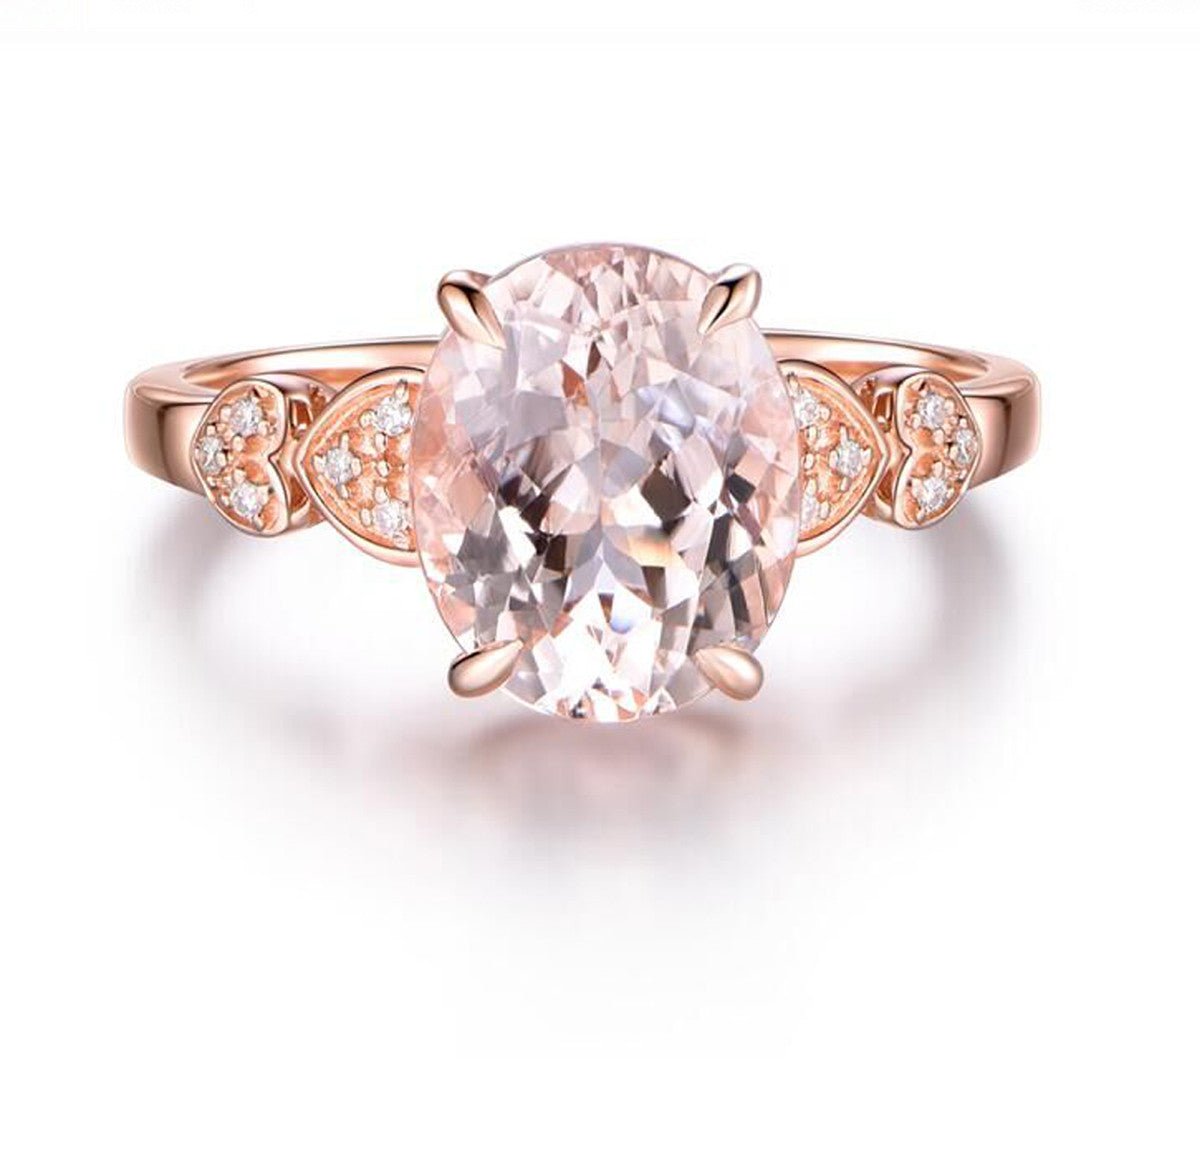 Oval Morganite Diamond Lovely Heart Ring 14K Rose Gold - Lord of Gem Rings